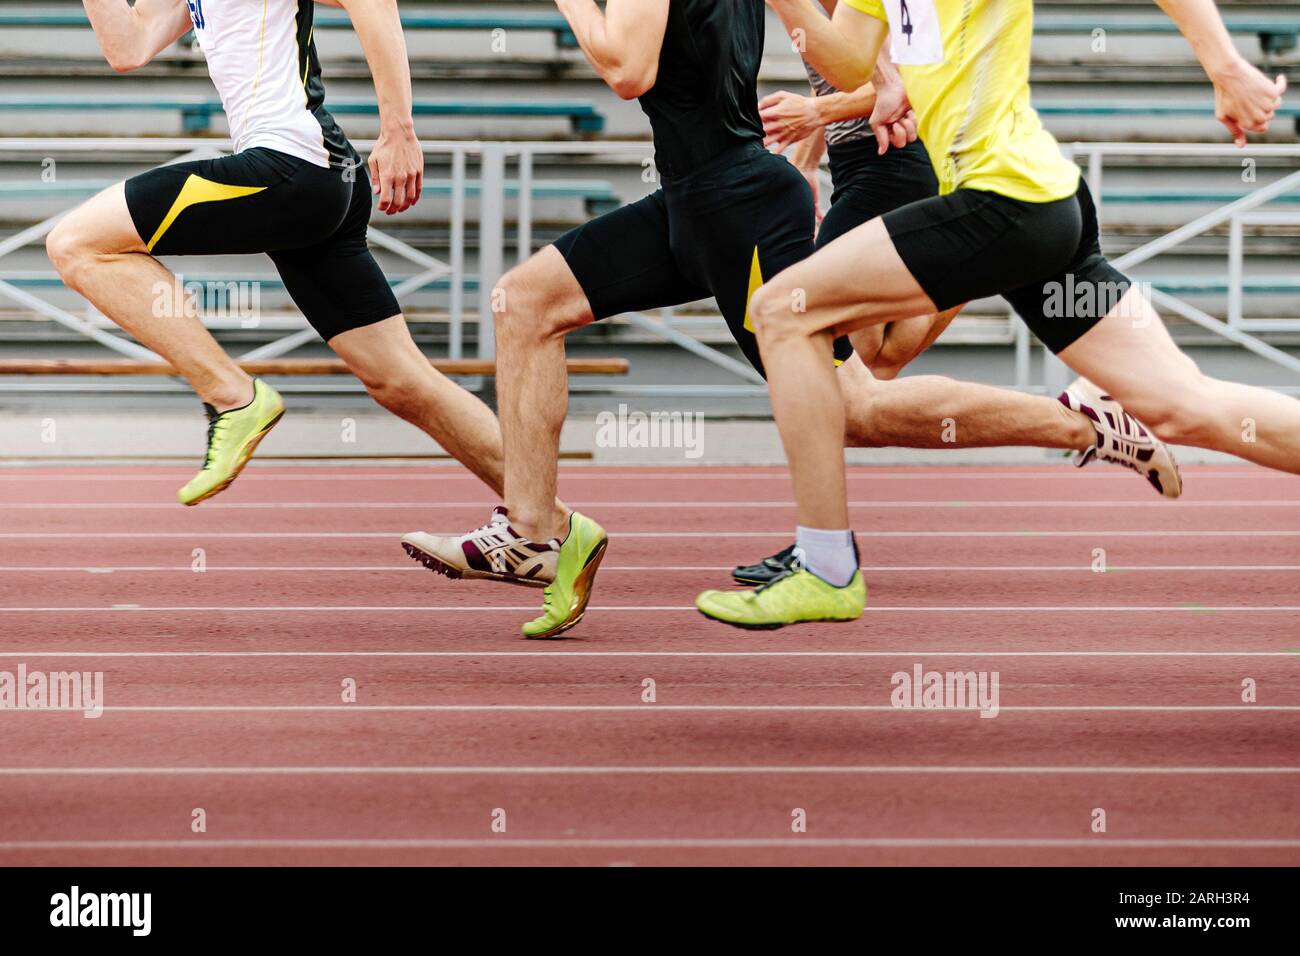 piernas hombres atletas corredores correr carrera sprint en atletismo  Fotografía de stock - Alamy